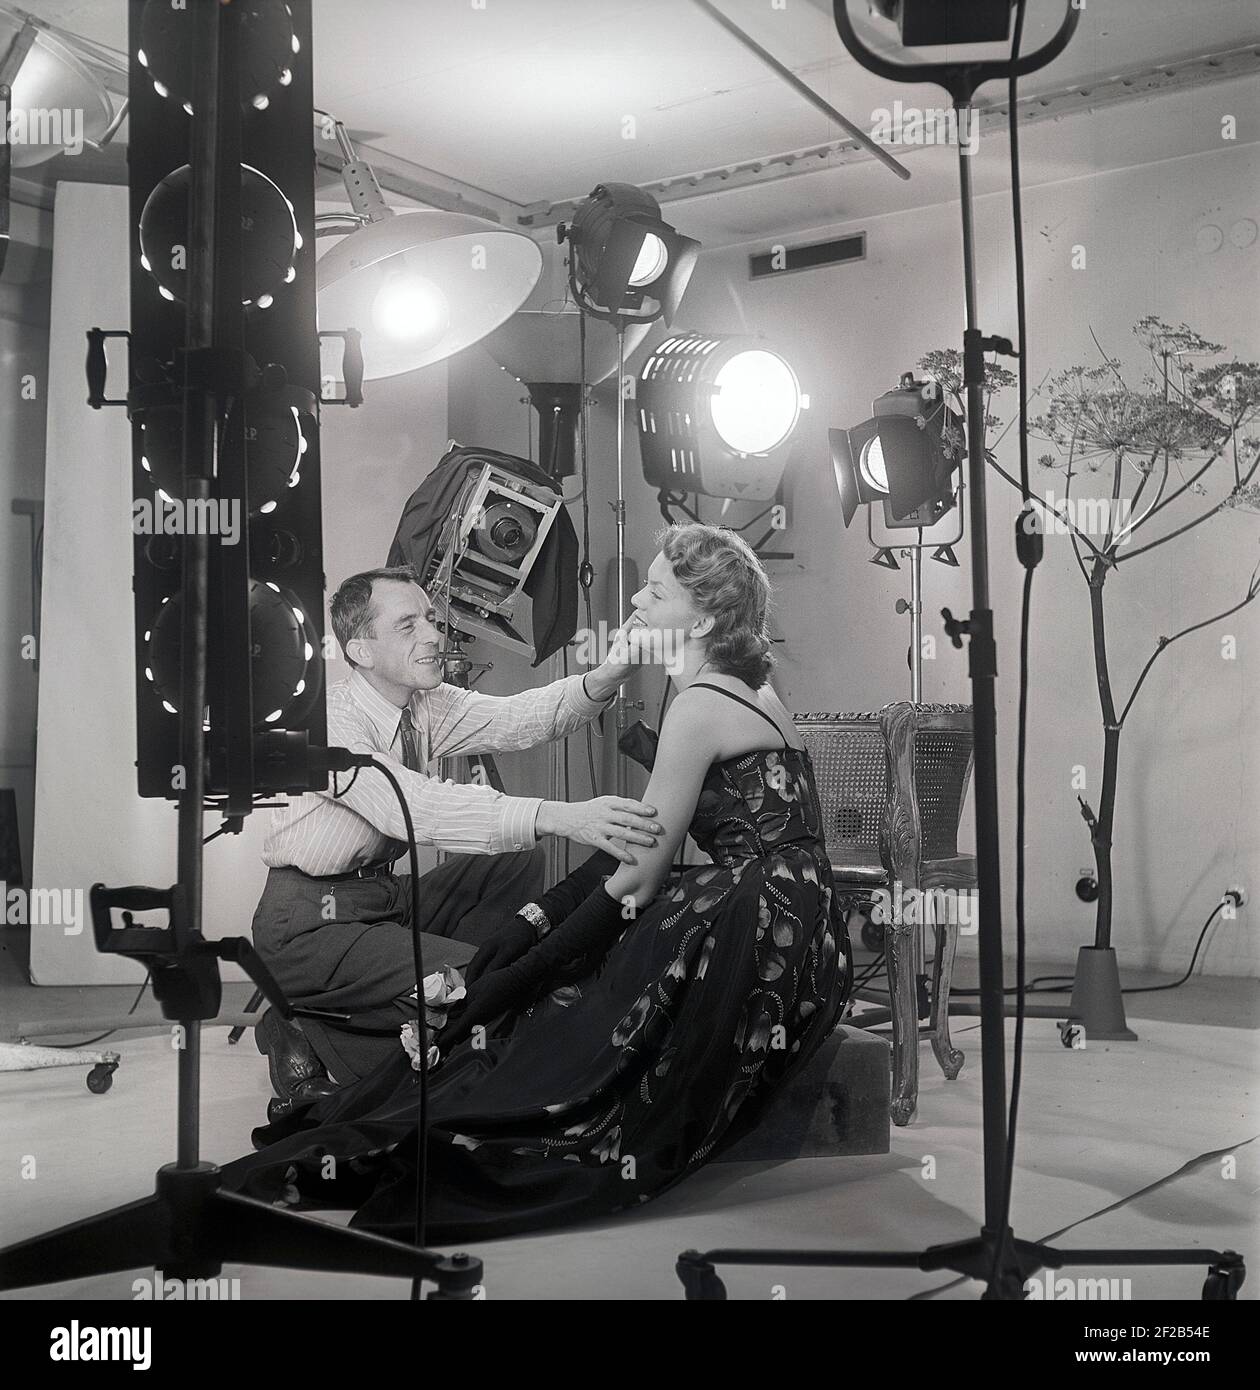 1940s Modefotograf und Model. Eine junge weibliche Modell ist in einem Fotografen Studio einige letzte Anweisungen vor der Aufnahme der Bilder gegeben. Lampen und die Kamera ist sichtbar. Schweden 1949 Ref. AT7-7 Stockfoto